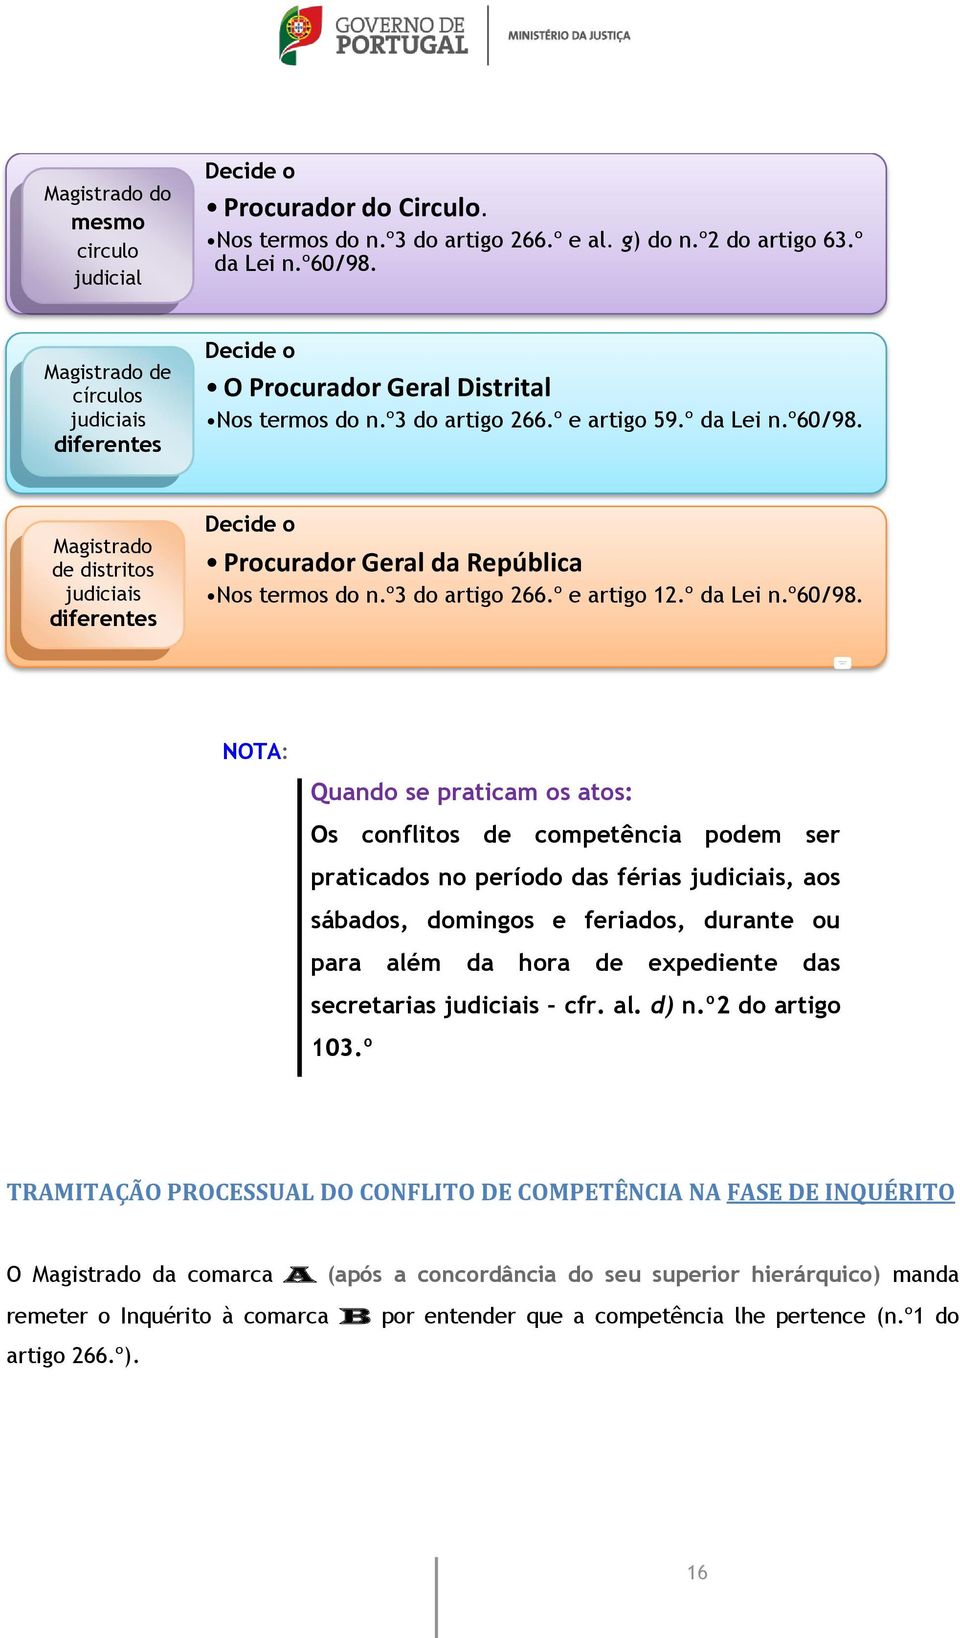 Magistrado de distritos judiciais diferentes Decide o Procurador Geral da República Nos termos do n.º3 do artigo 266.º e artigo 12.º da Lei n.º60/98.